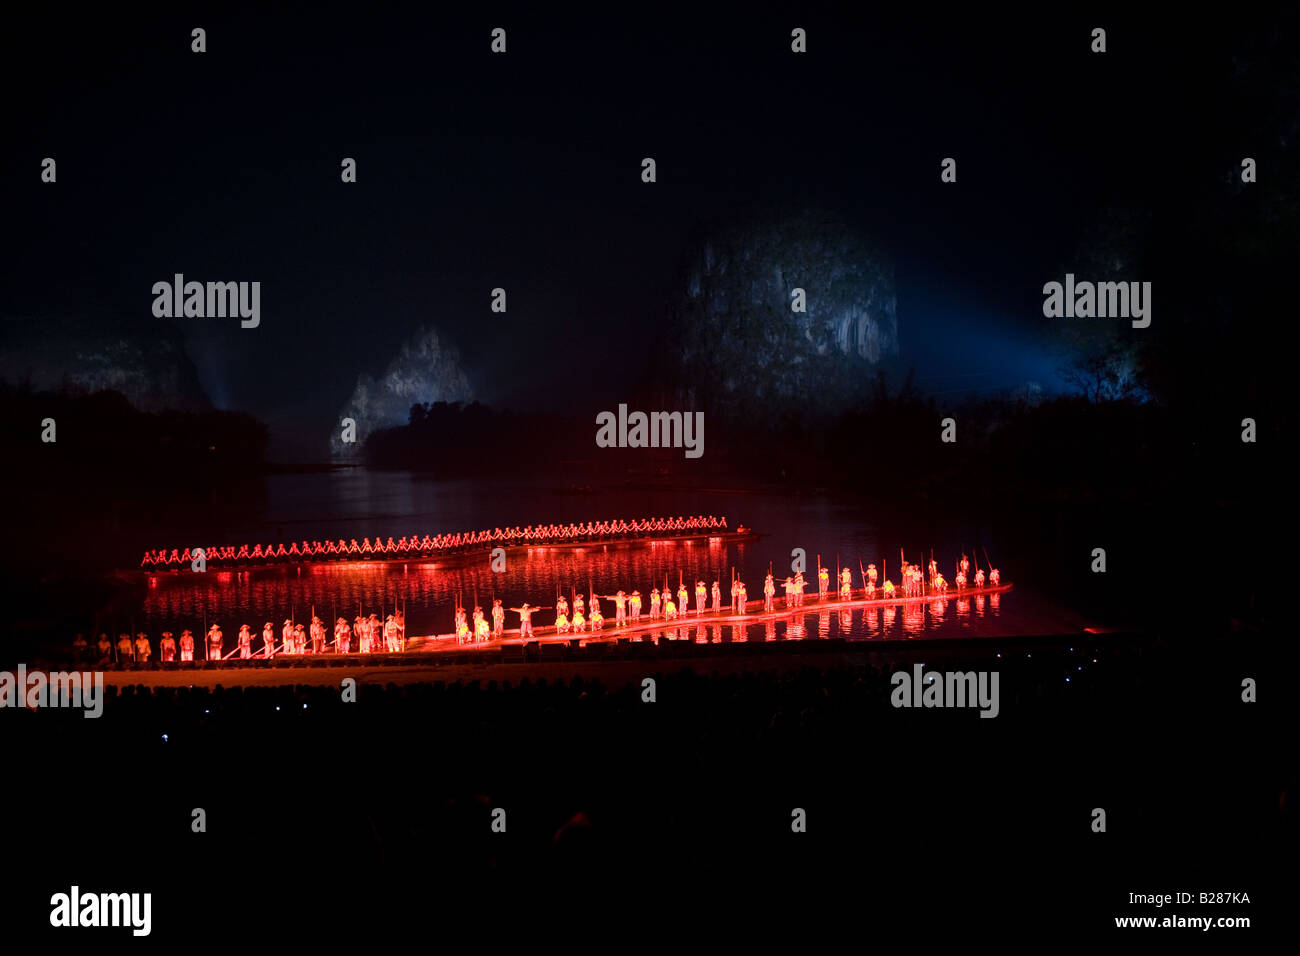 Les membres de l'Impression Liu Sanjie effectuant un spectacle son et lumière réalisé par Zhang Yimou Chine Yangshuo Banque D'Images